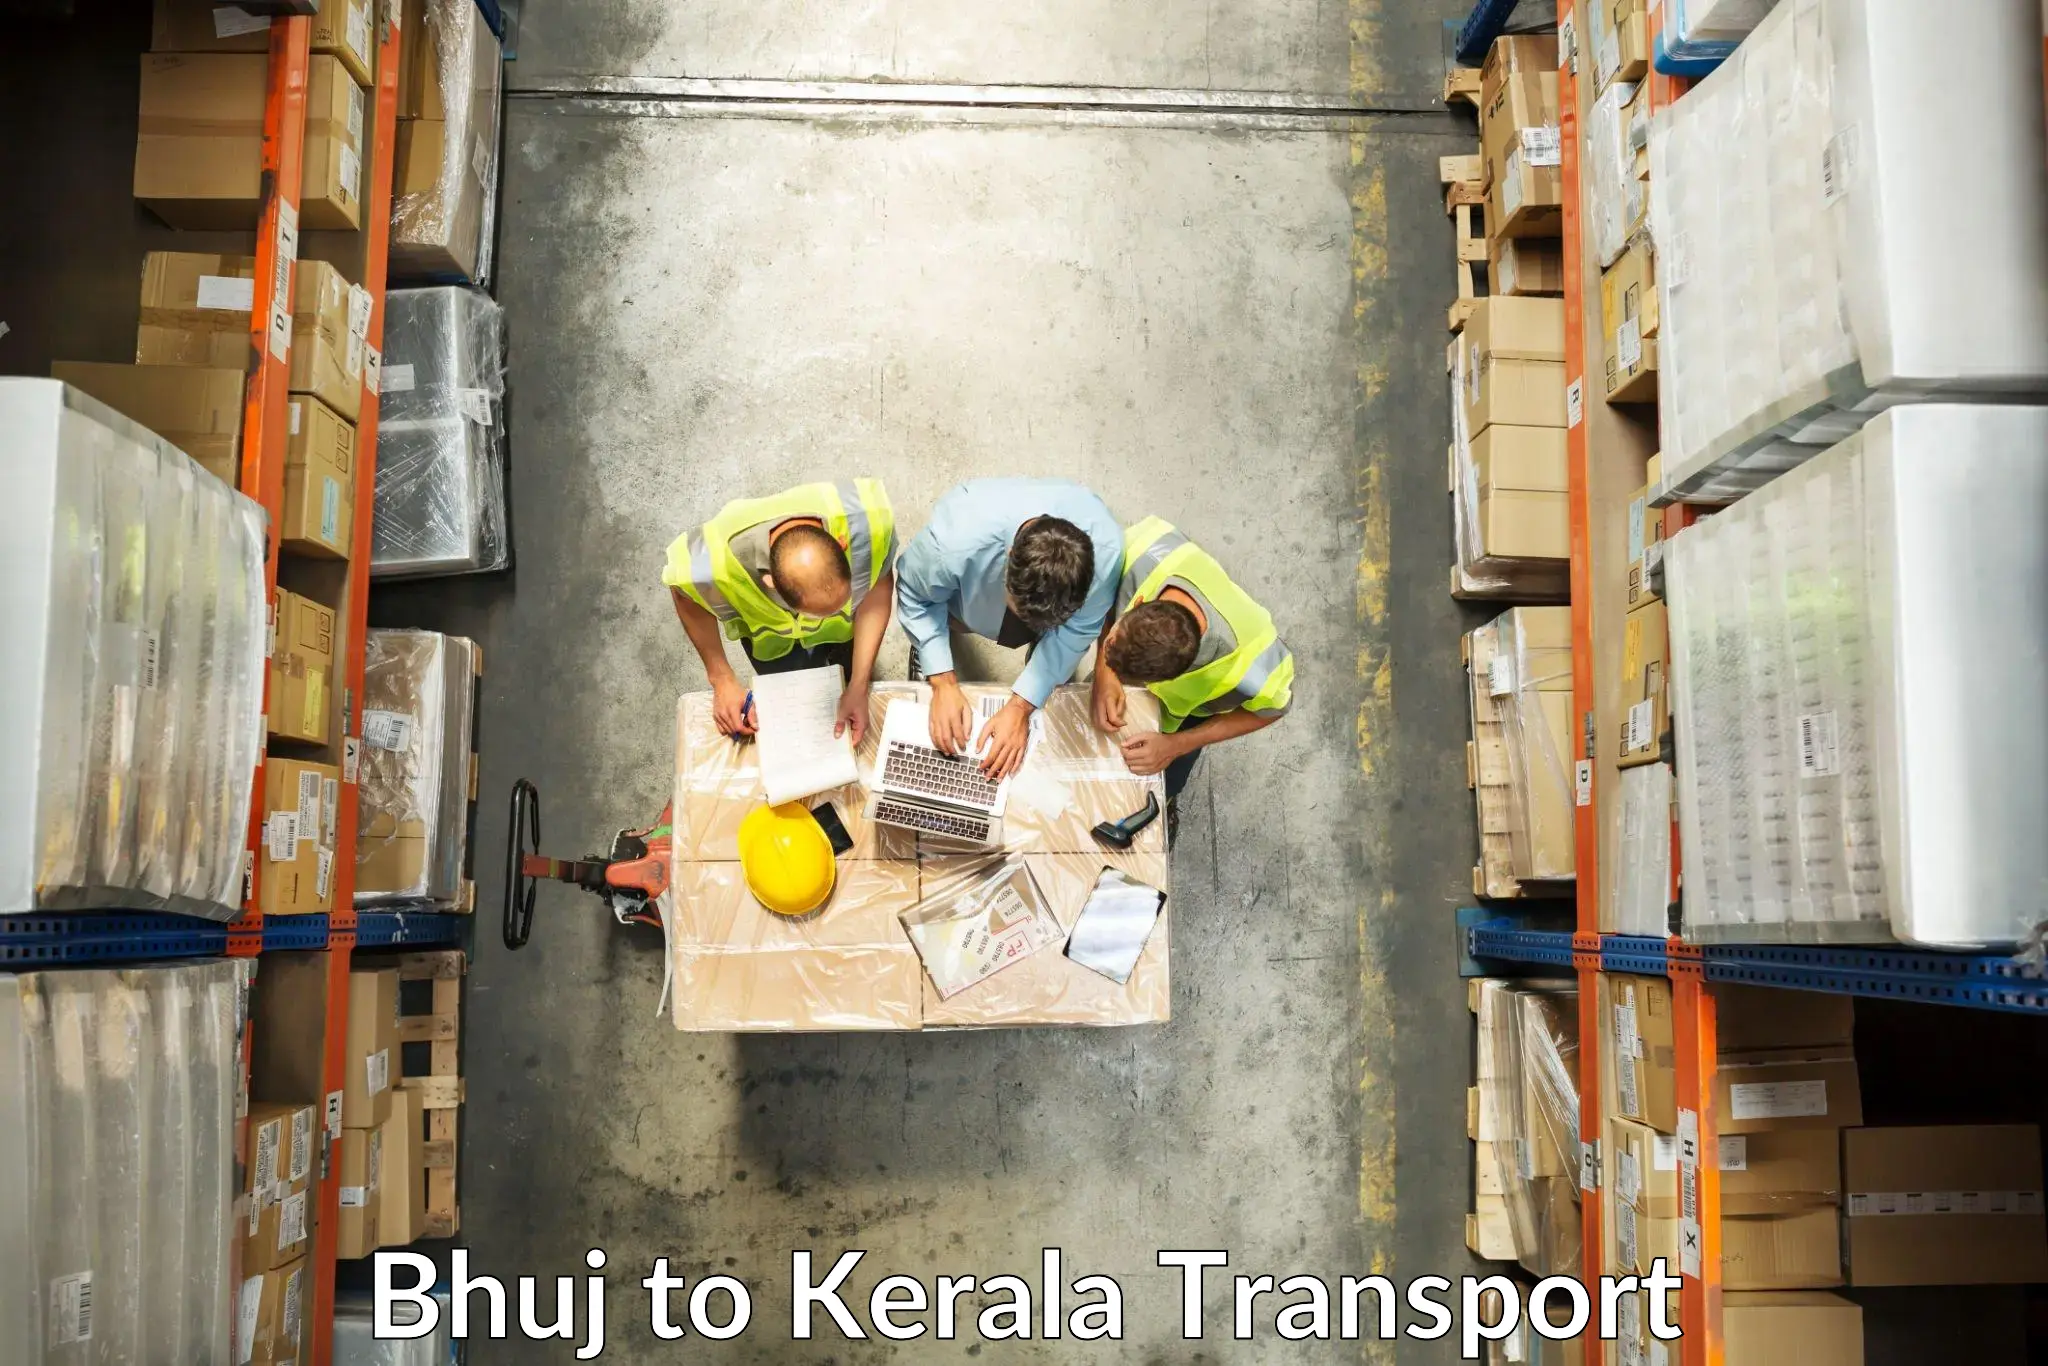 Truck transport companies in India Bhuj to Thiruvananthapuram